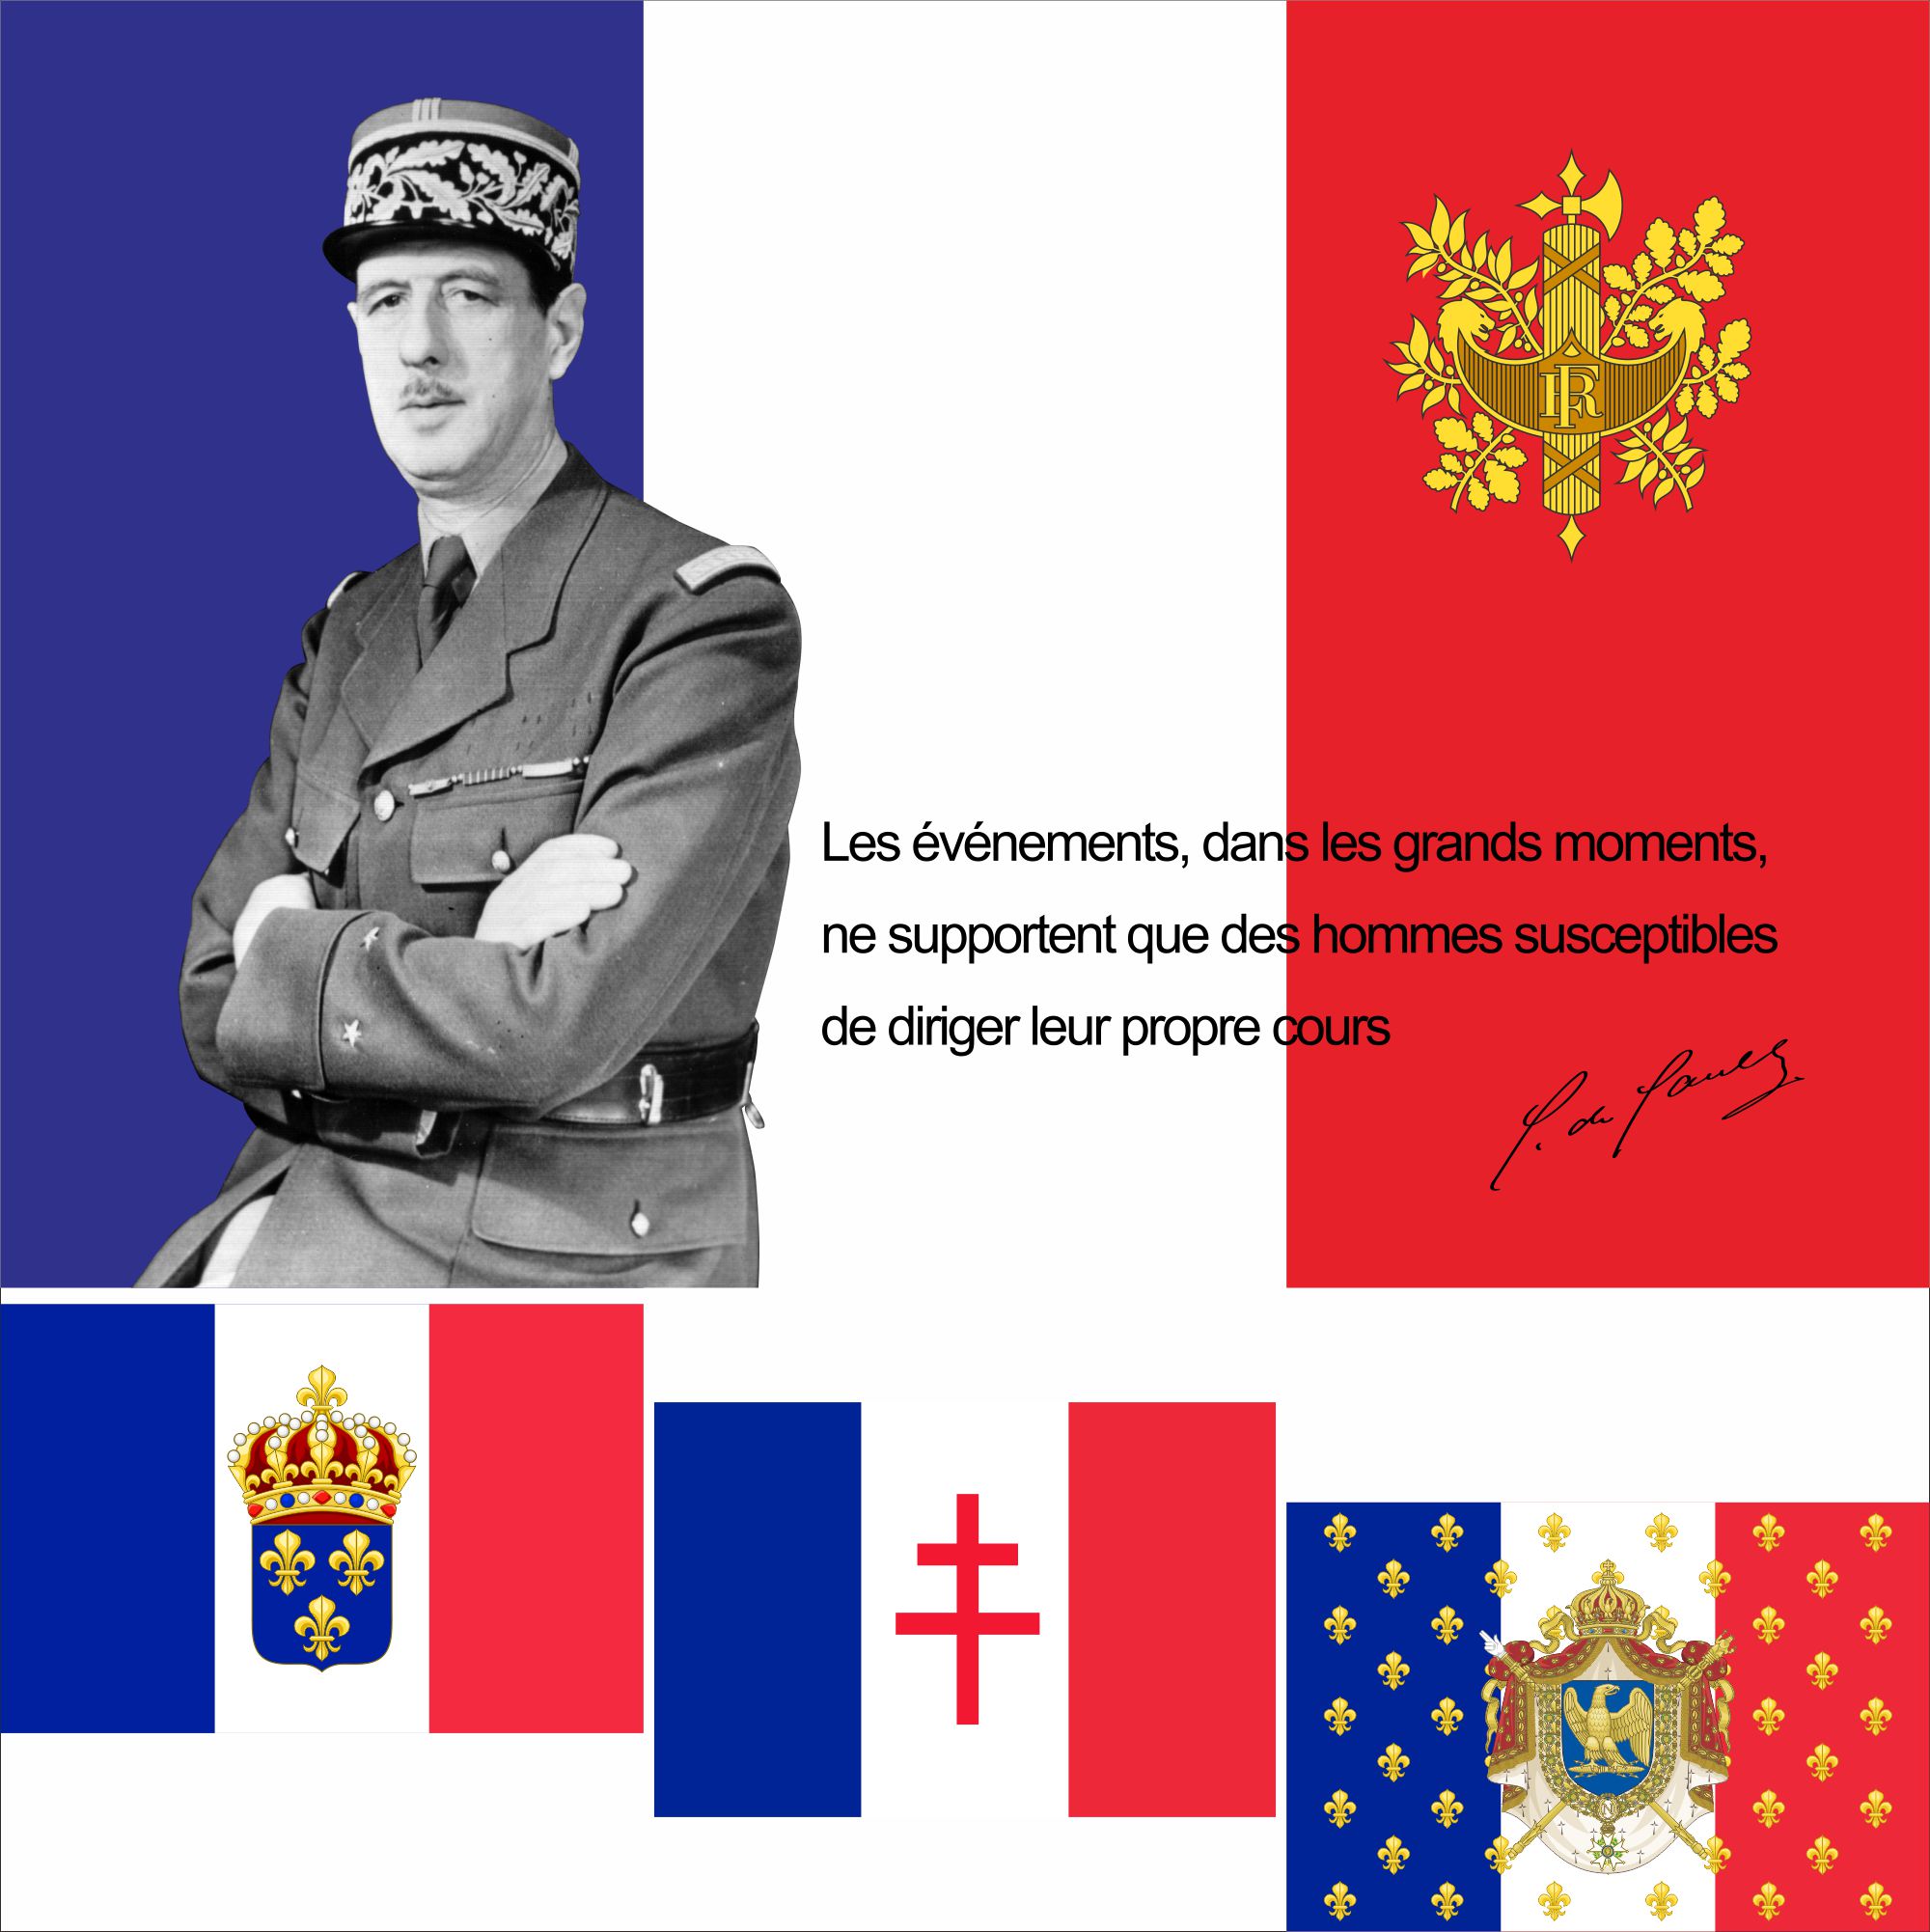   Napoleon De Gaulle Louis XIV 3X5FT 100D..